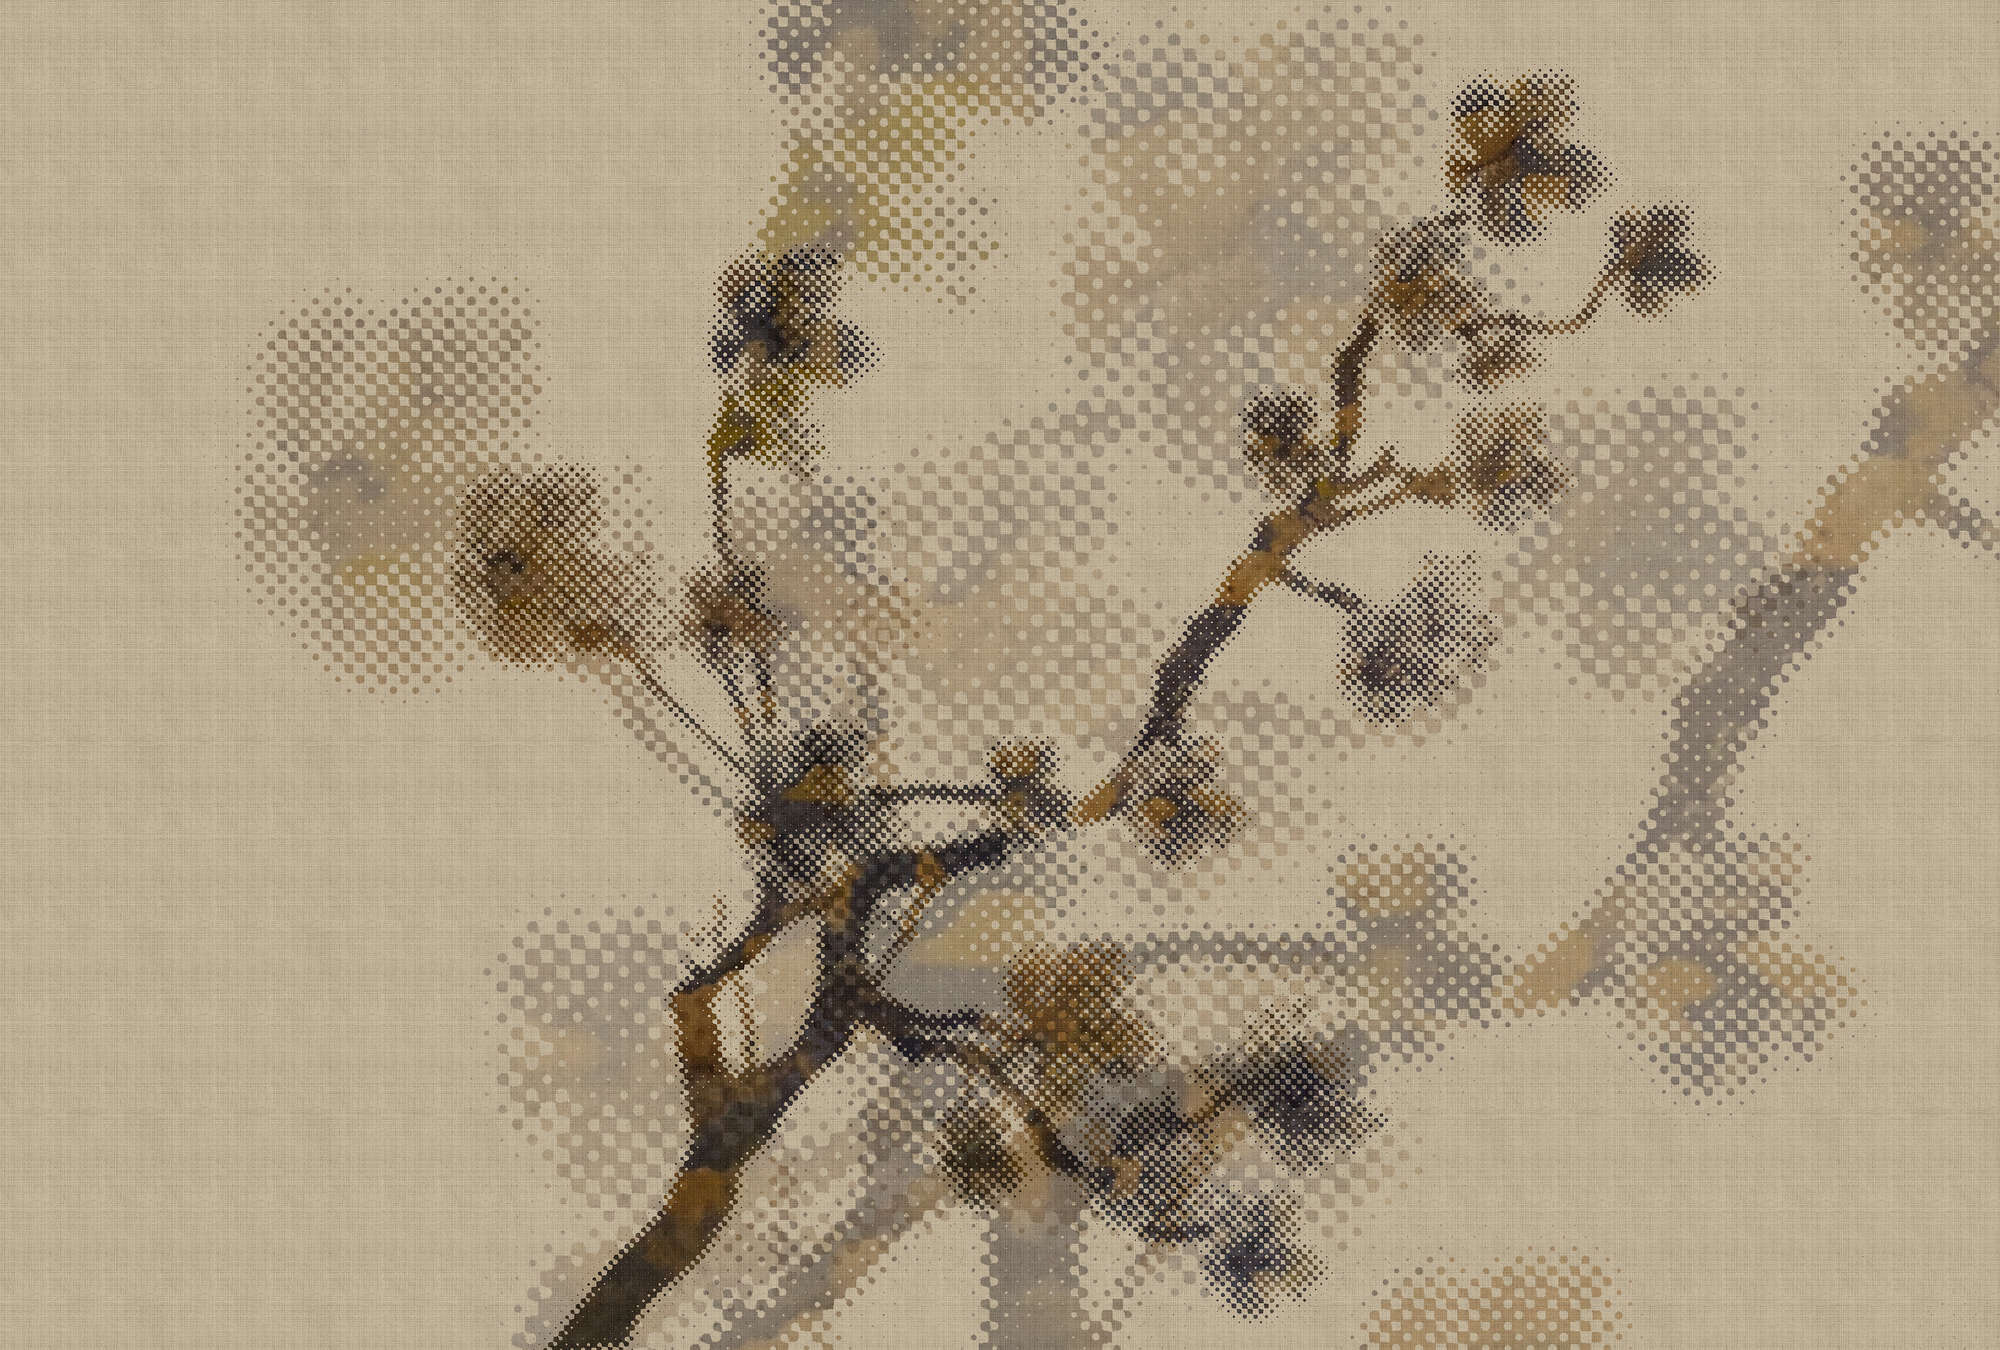             Twigs 2 - Onderlaag behang in natuurlijke linnenstructuur met takjesmotief & pixeldessin - Beige | structuurvlies
        